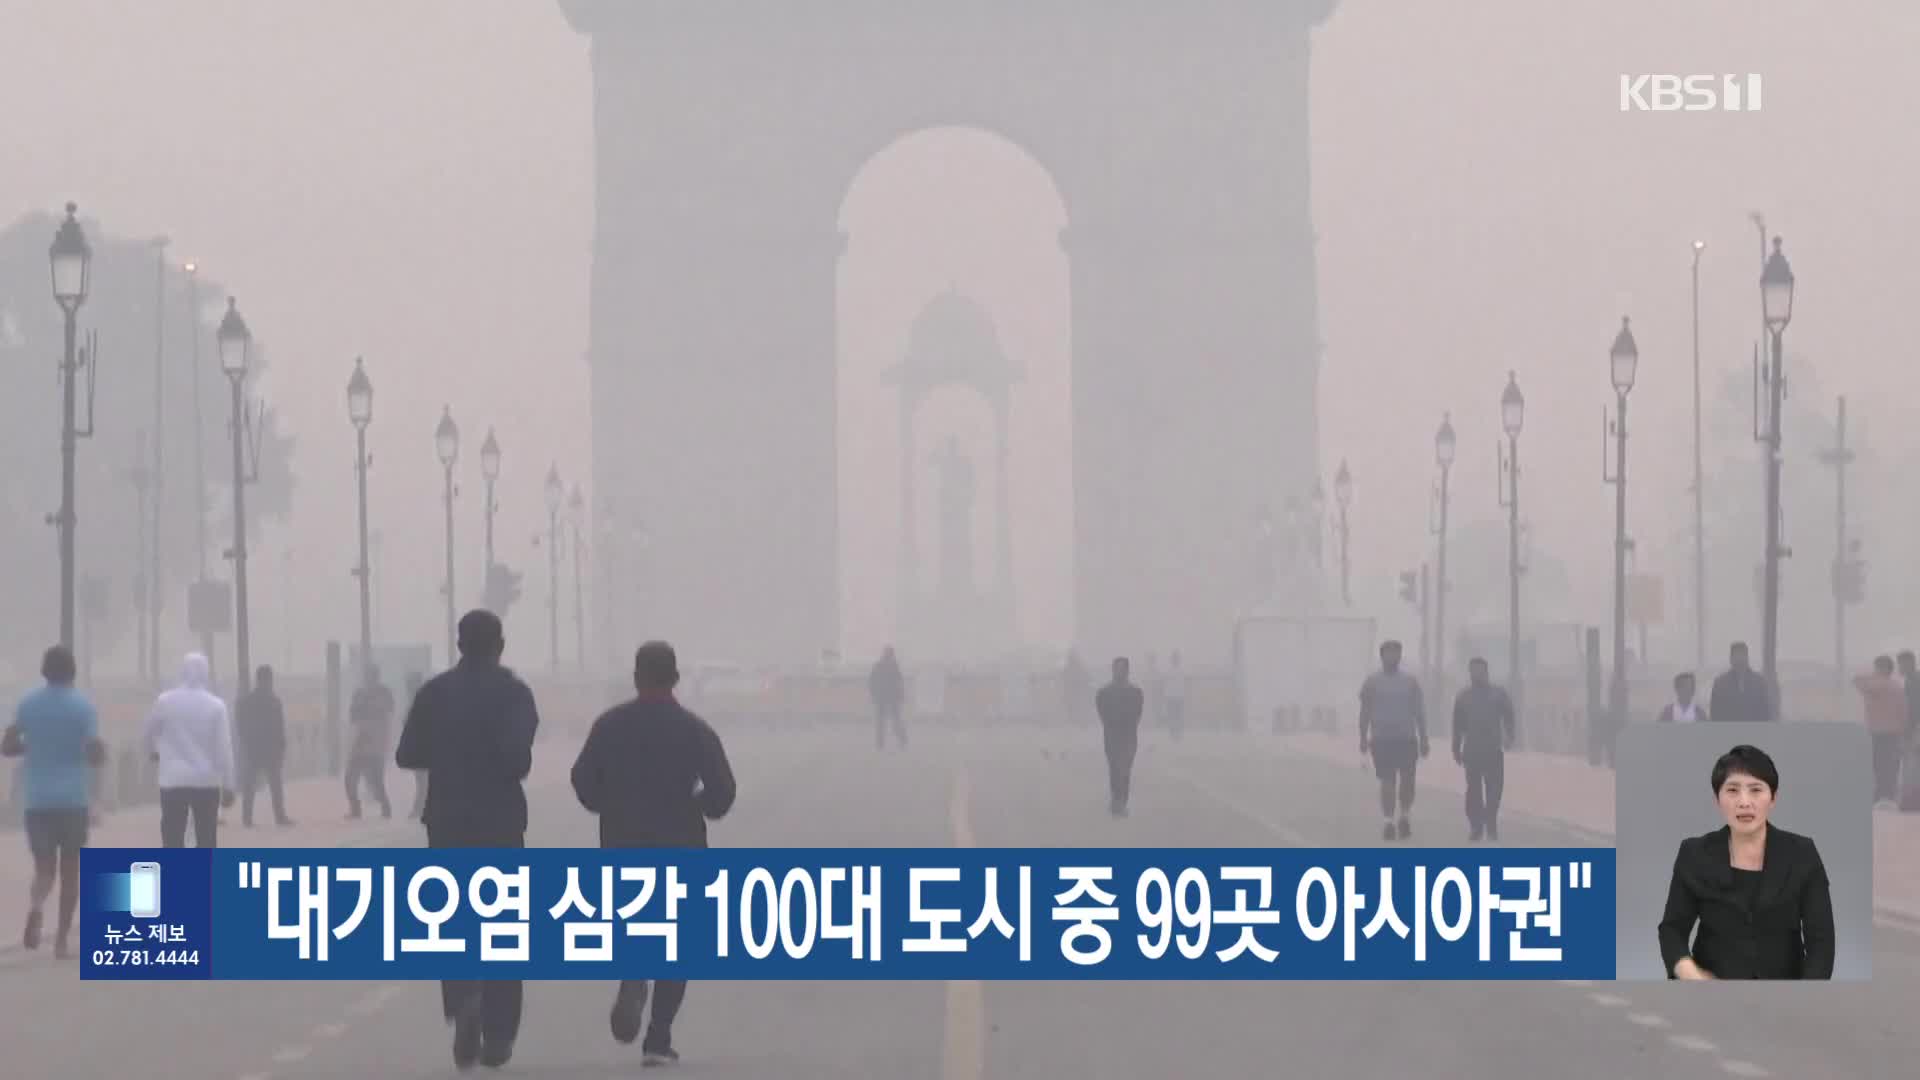 [기후는 말한다] “대기오염 심각 100대 도시 중 99곳 아시아권”